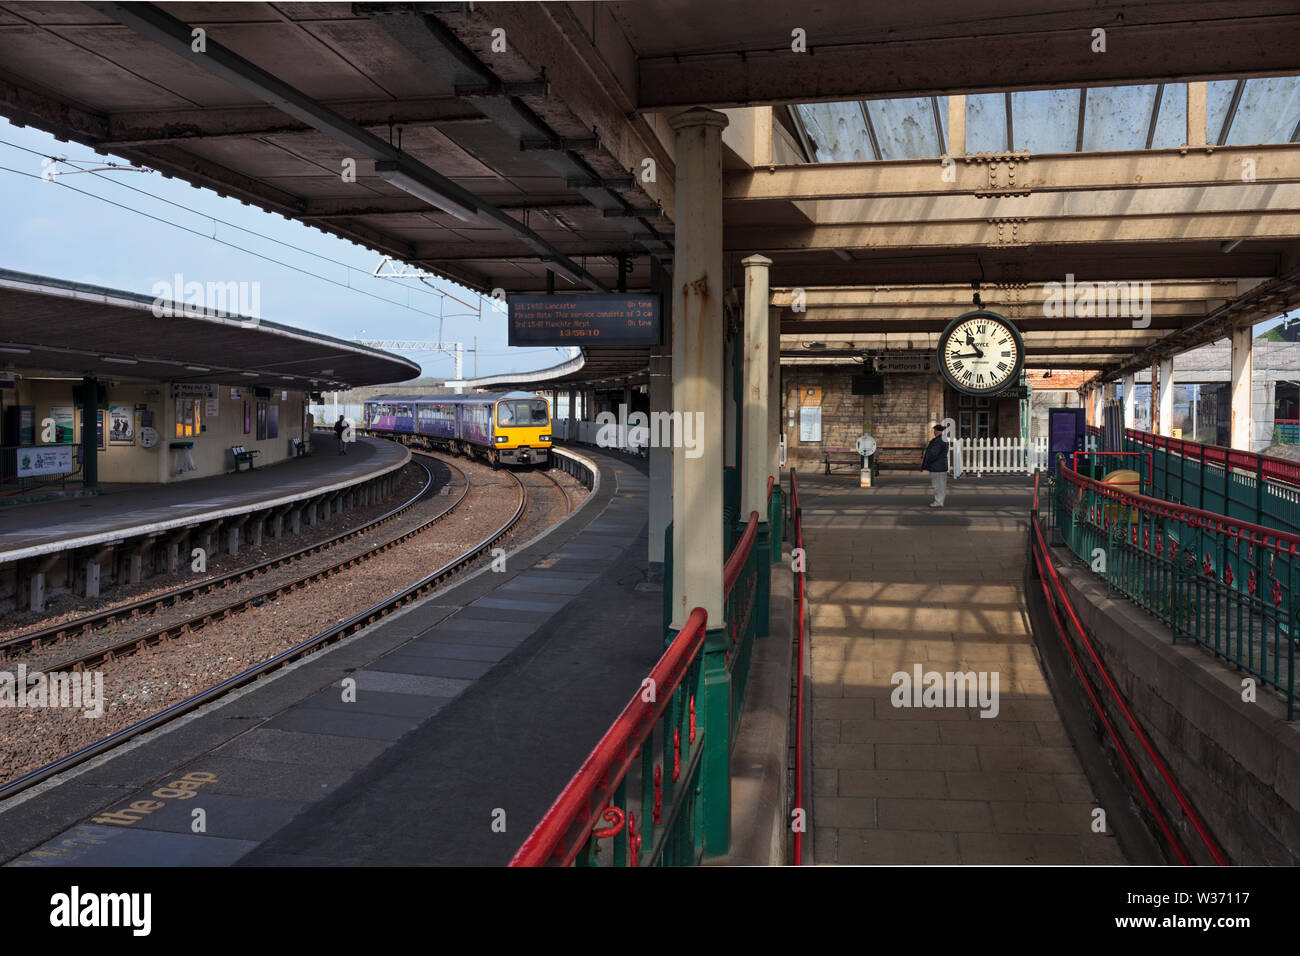 Arriva ferroviaria settentrionale classe 144 treno dello stimolatore a Carnforth stazione ferroviaria con il famoso orologio dal breve incontro film Foto Stock